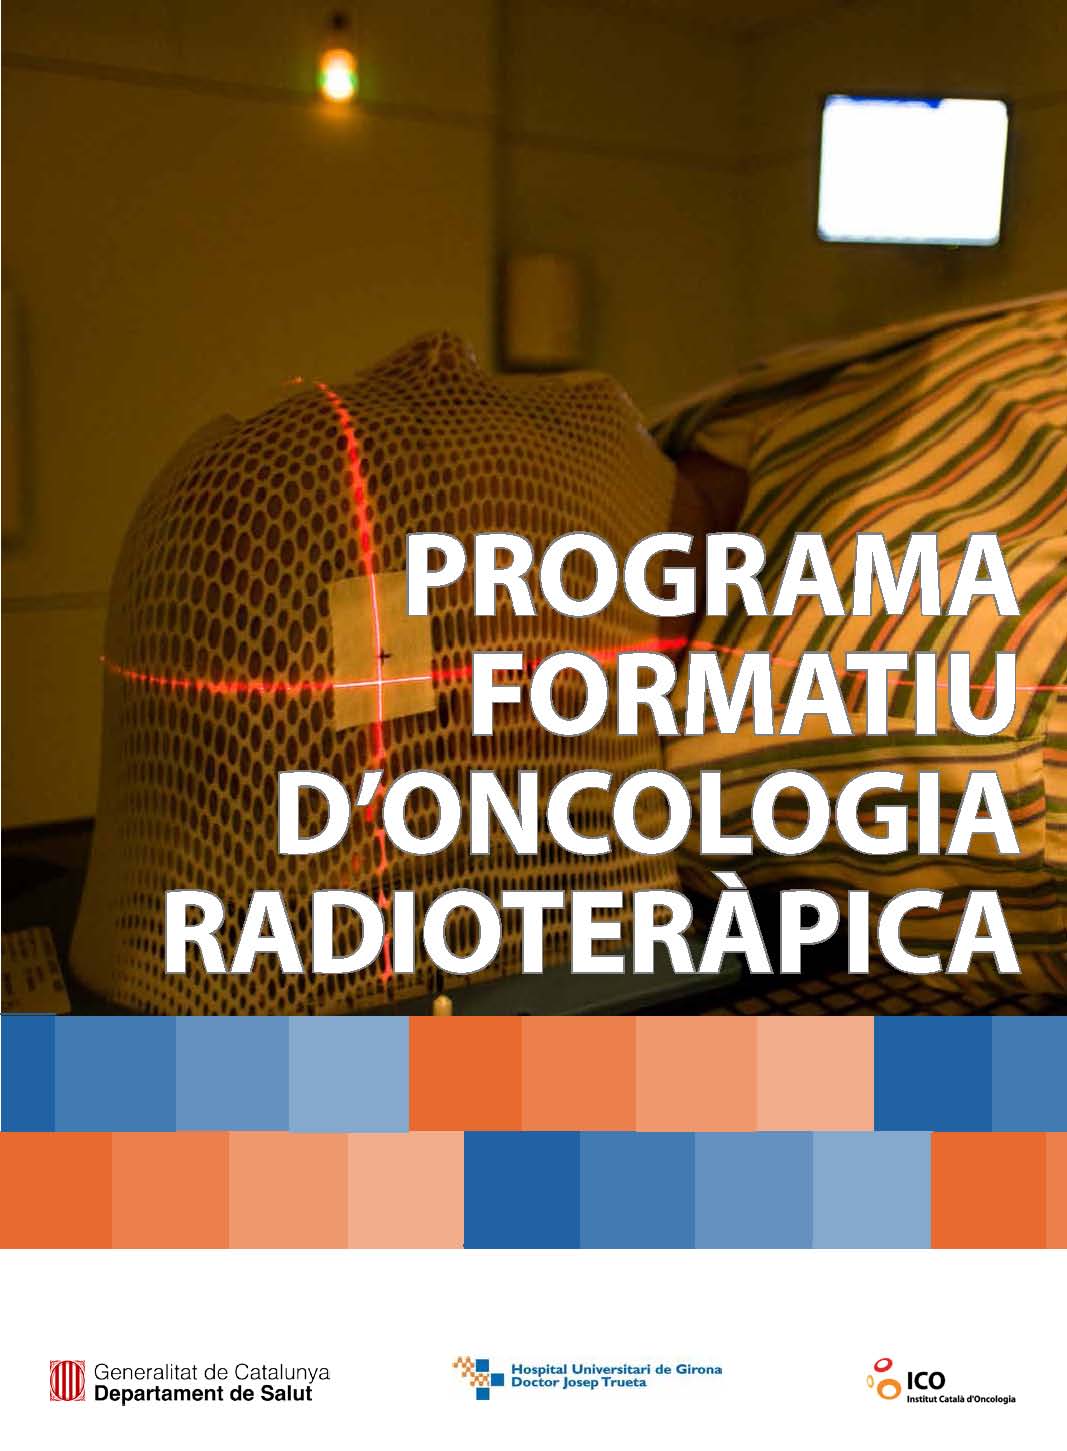 Programa formatiu oncologia radioteràpica